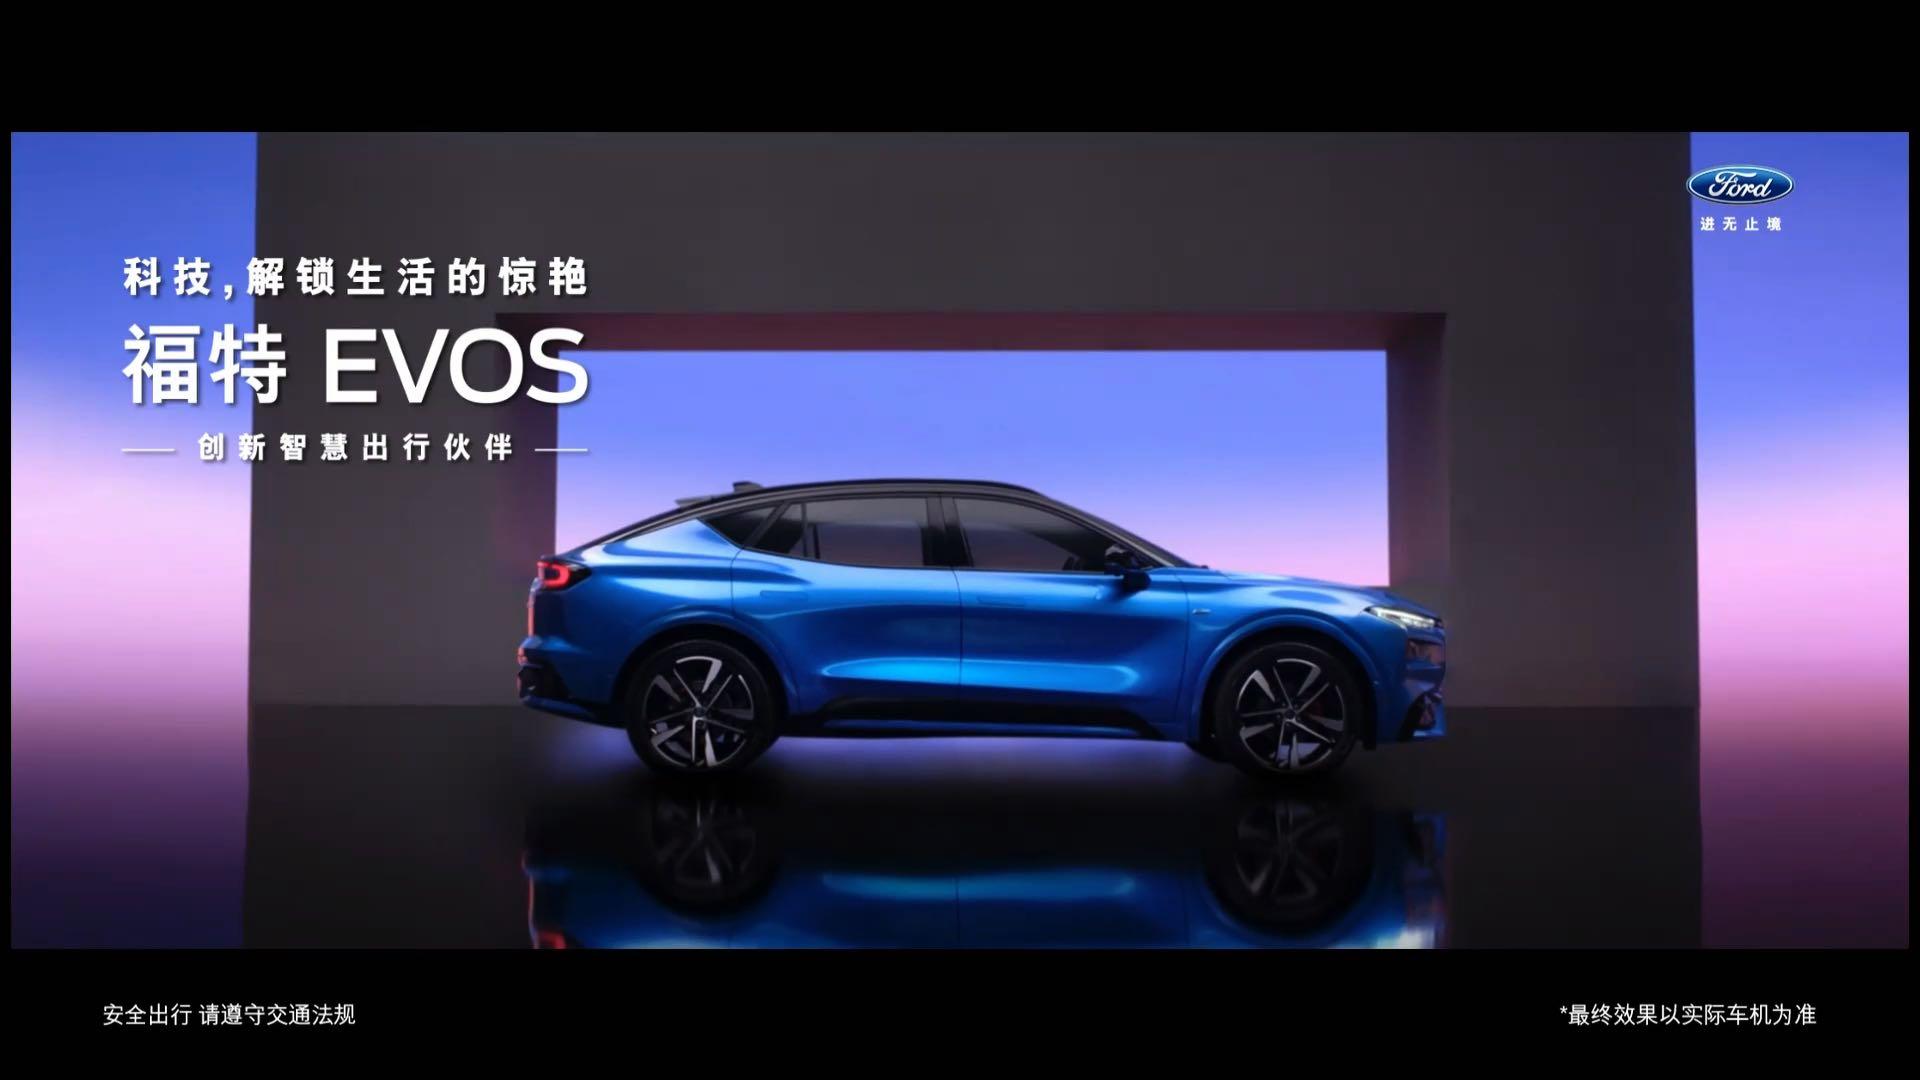 像天空之镜一样美爆了的汽车广告，广告人必看了！福特EVOS